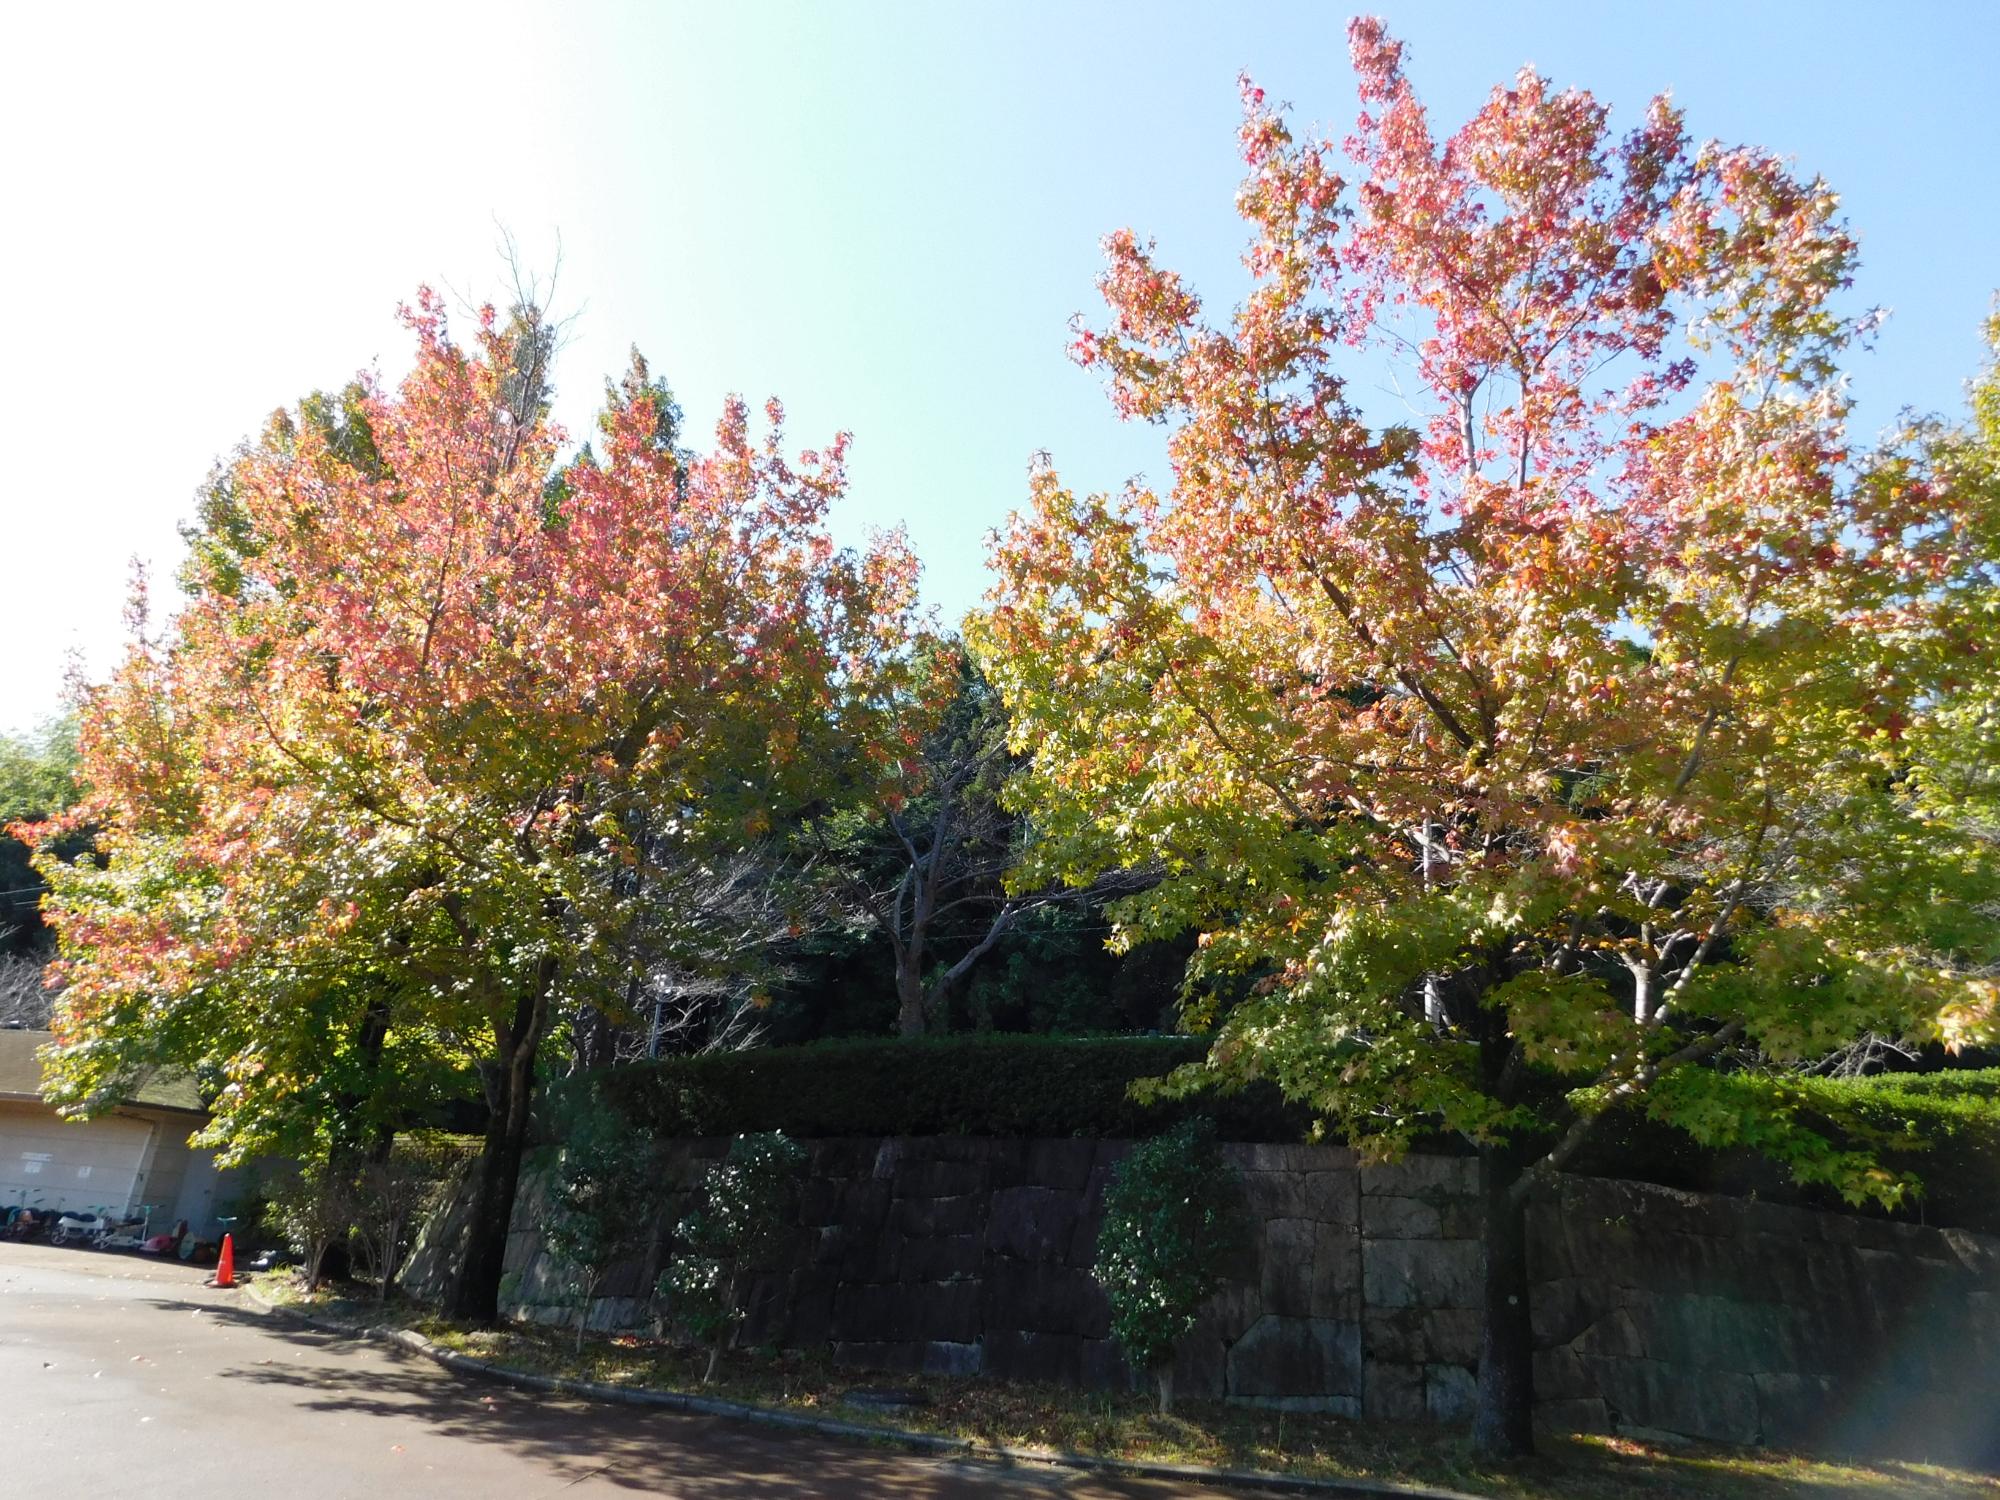 おもしろサイクル広場のアメリカフウ(別名 モミジバフウ)の大木です。公園の中では、いち早く紅葉が始まります。紅葉が進むにつれ葉色がオレンジ色から赤に変化していきます。